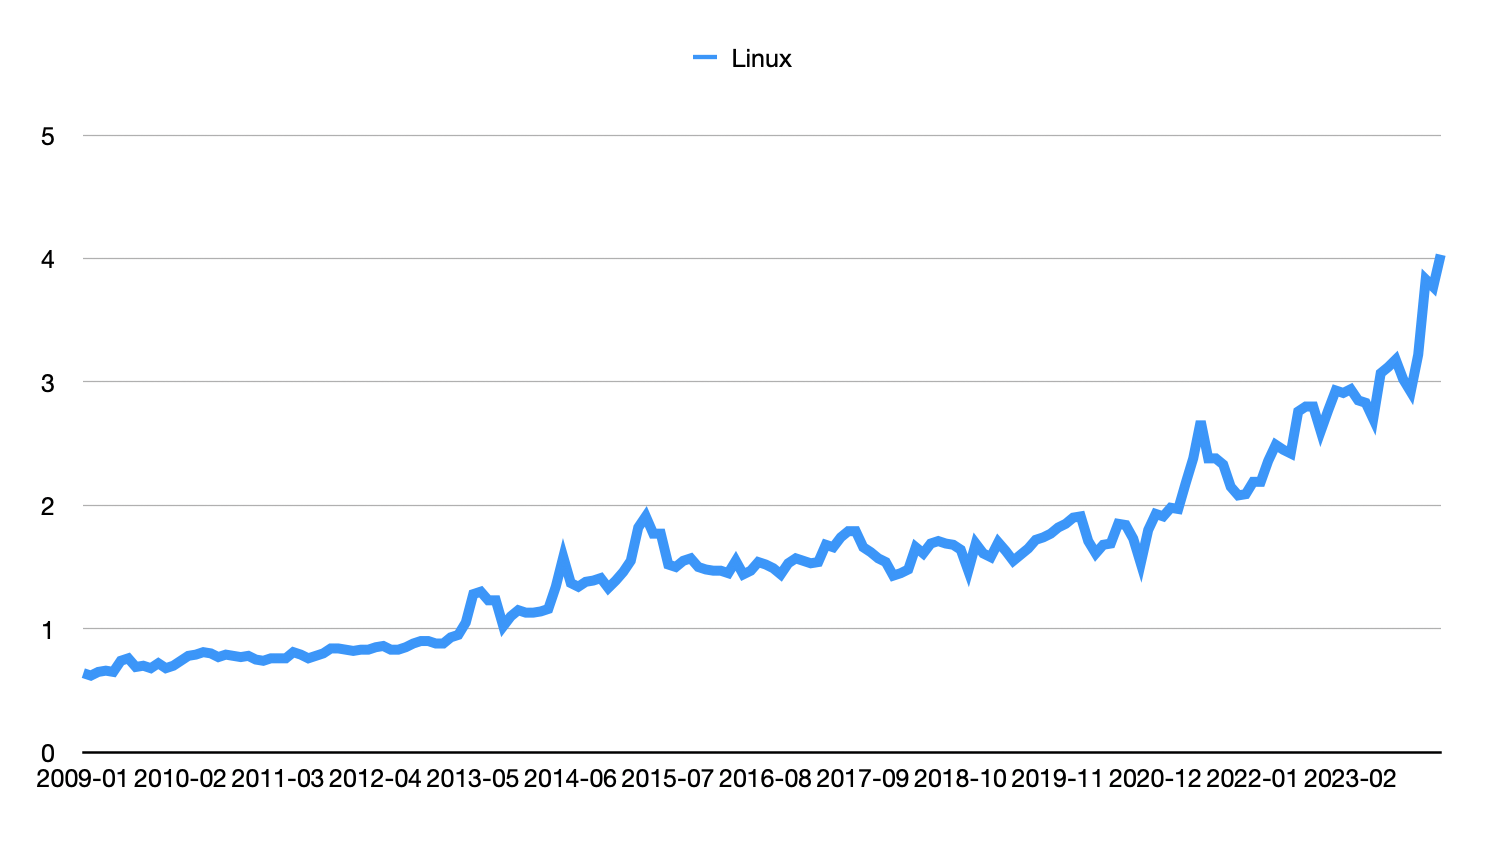 Évolution de la part de marché de Linux sur les ordinateurs de bureau et laptops